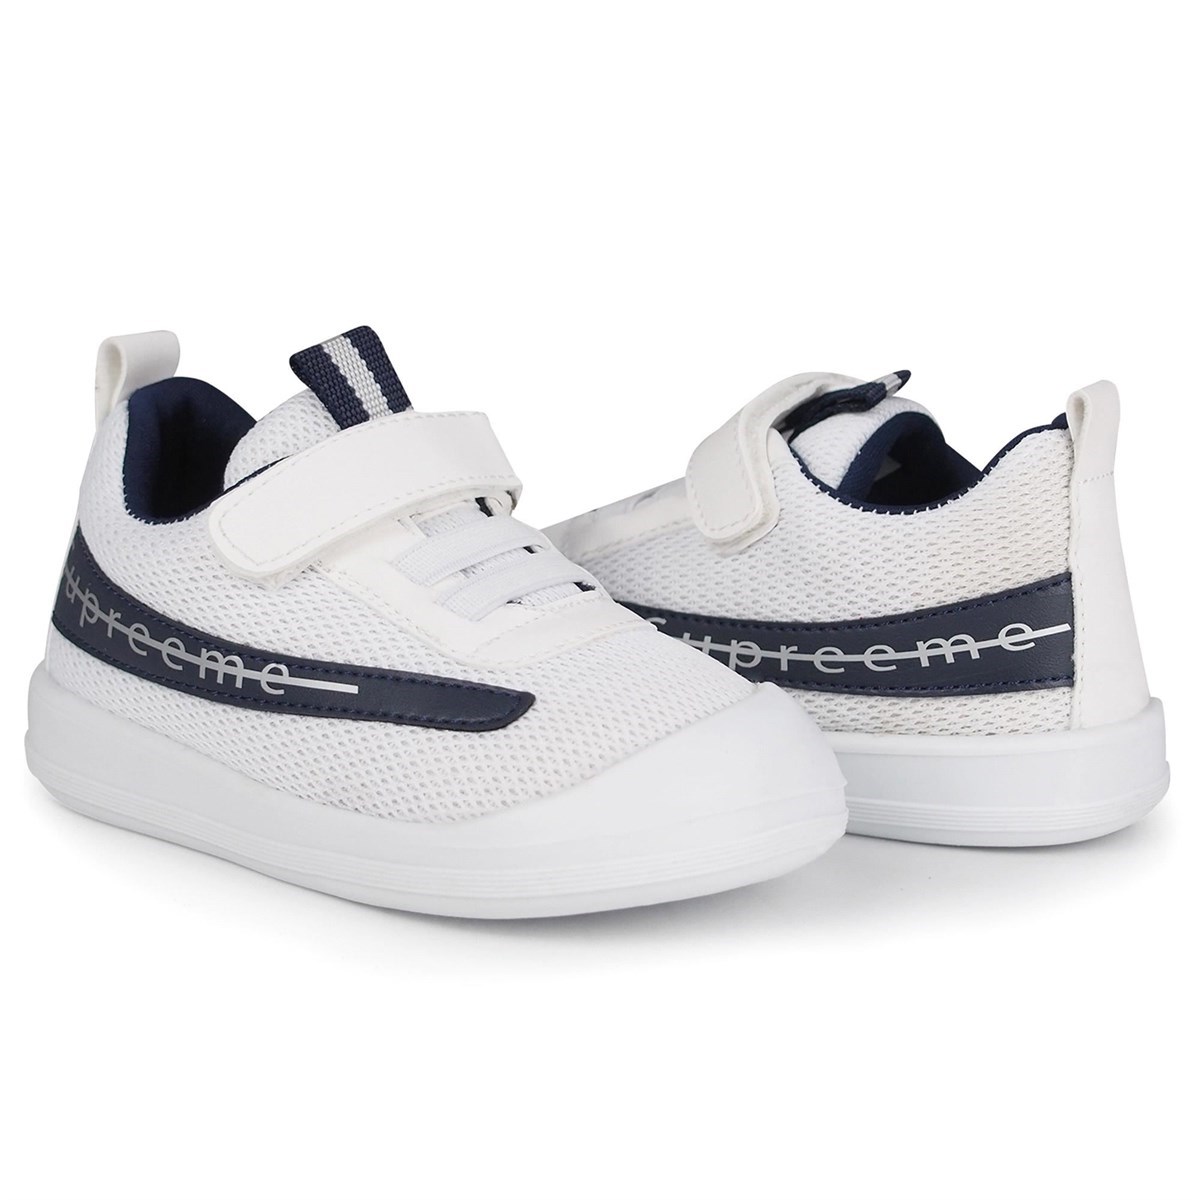 Polaris Erkek Çocuk Spor Ayakkabı Beyaz 520162